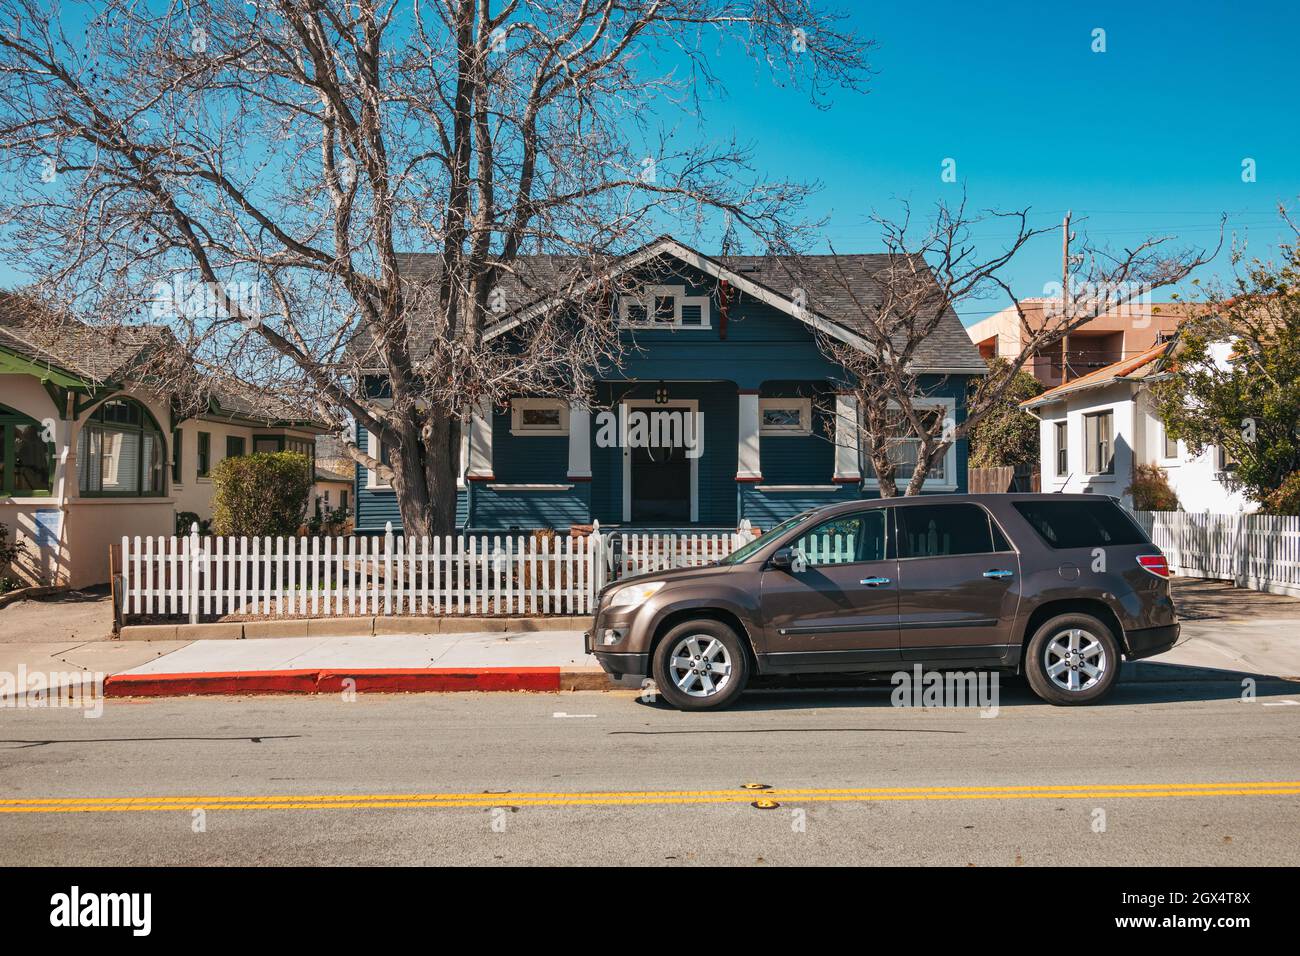 An ornate bungalow in suburban San Luis Obispo, California Stock Photo